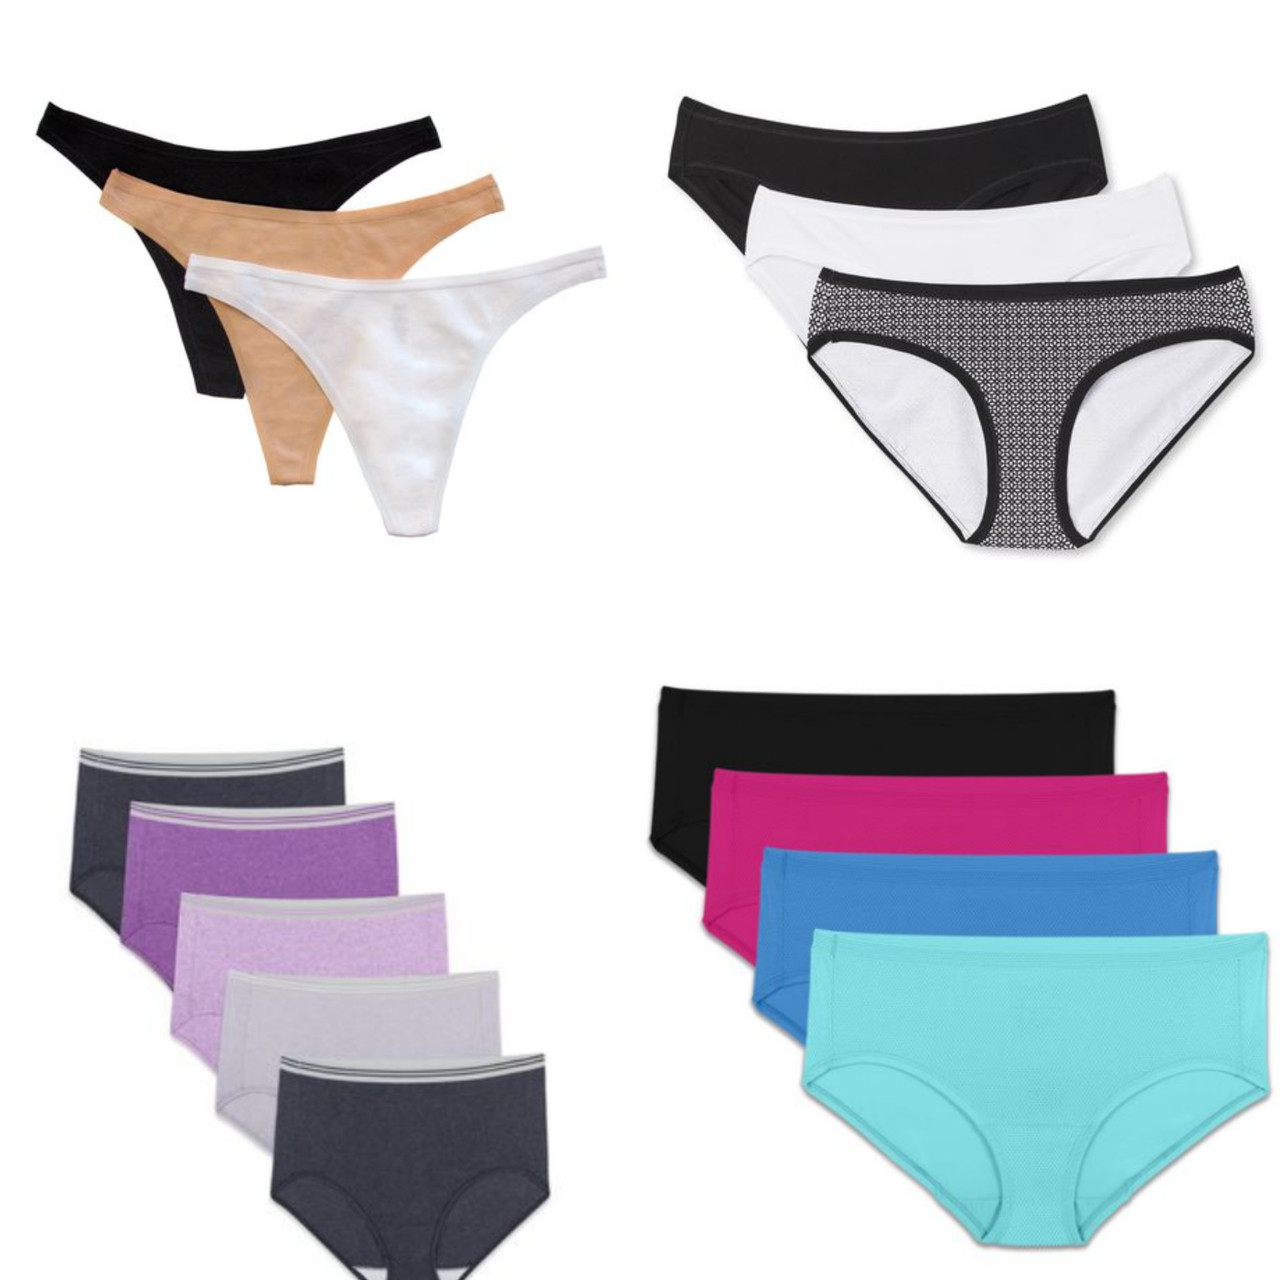 Maidenform Sweet Nothings Girls' Cotton Brief Underwear, 5-Pack, Sizes  (S-XL) 